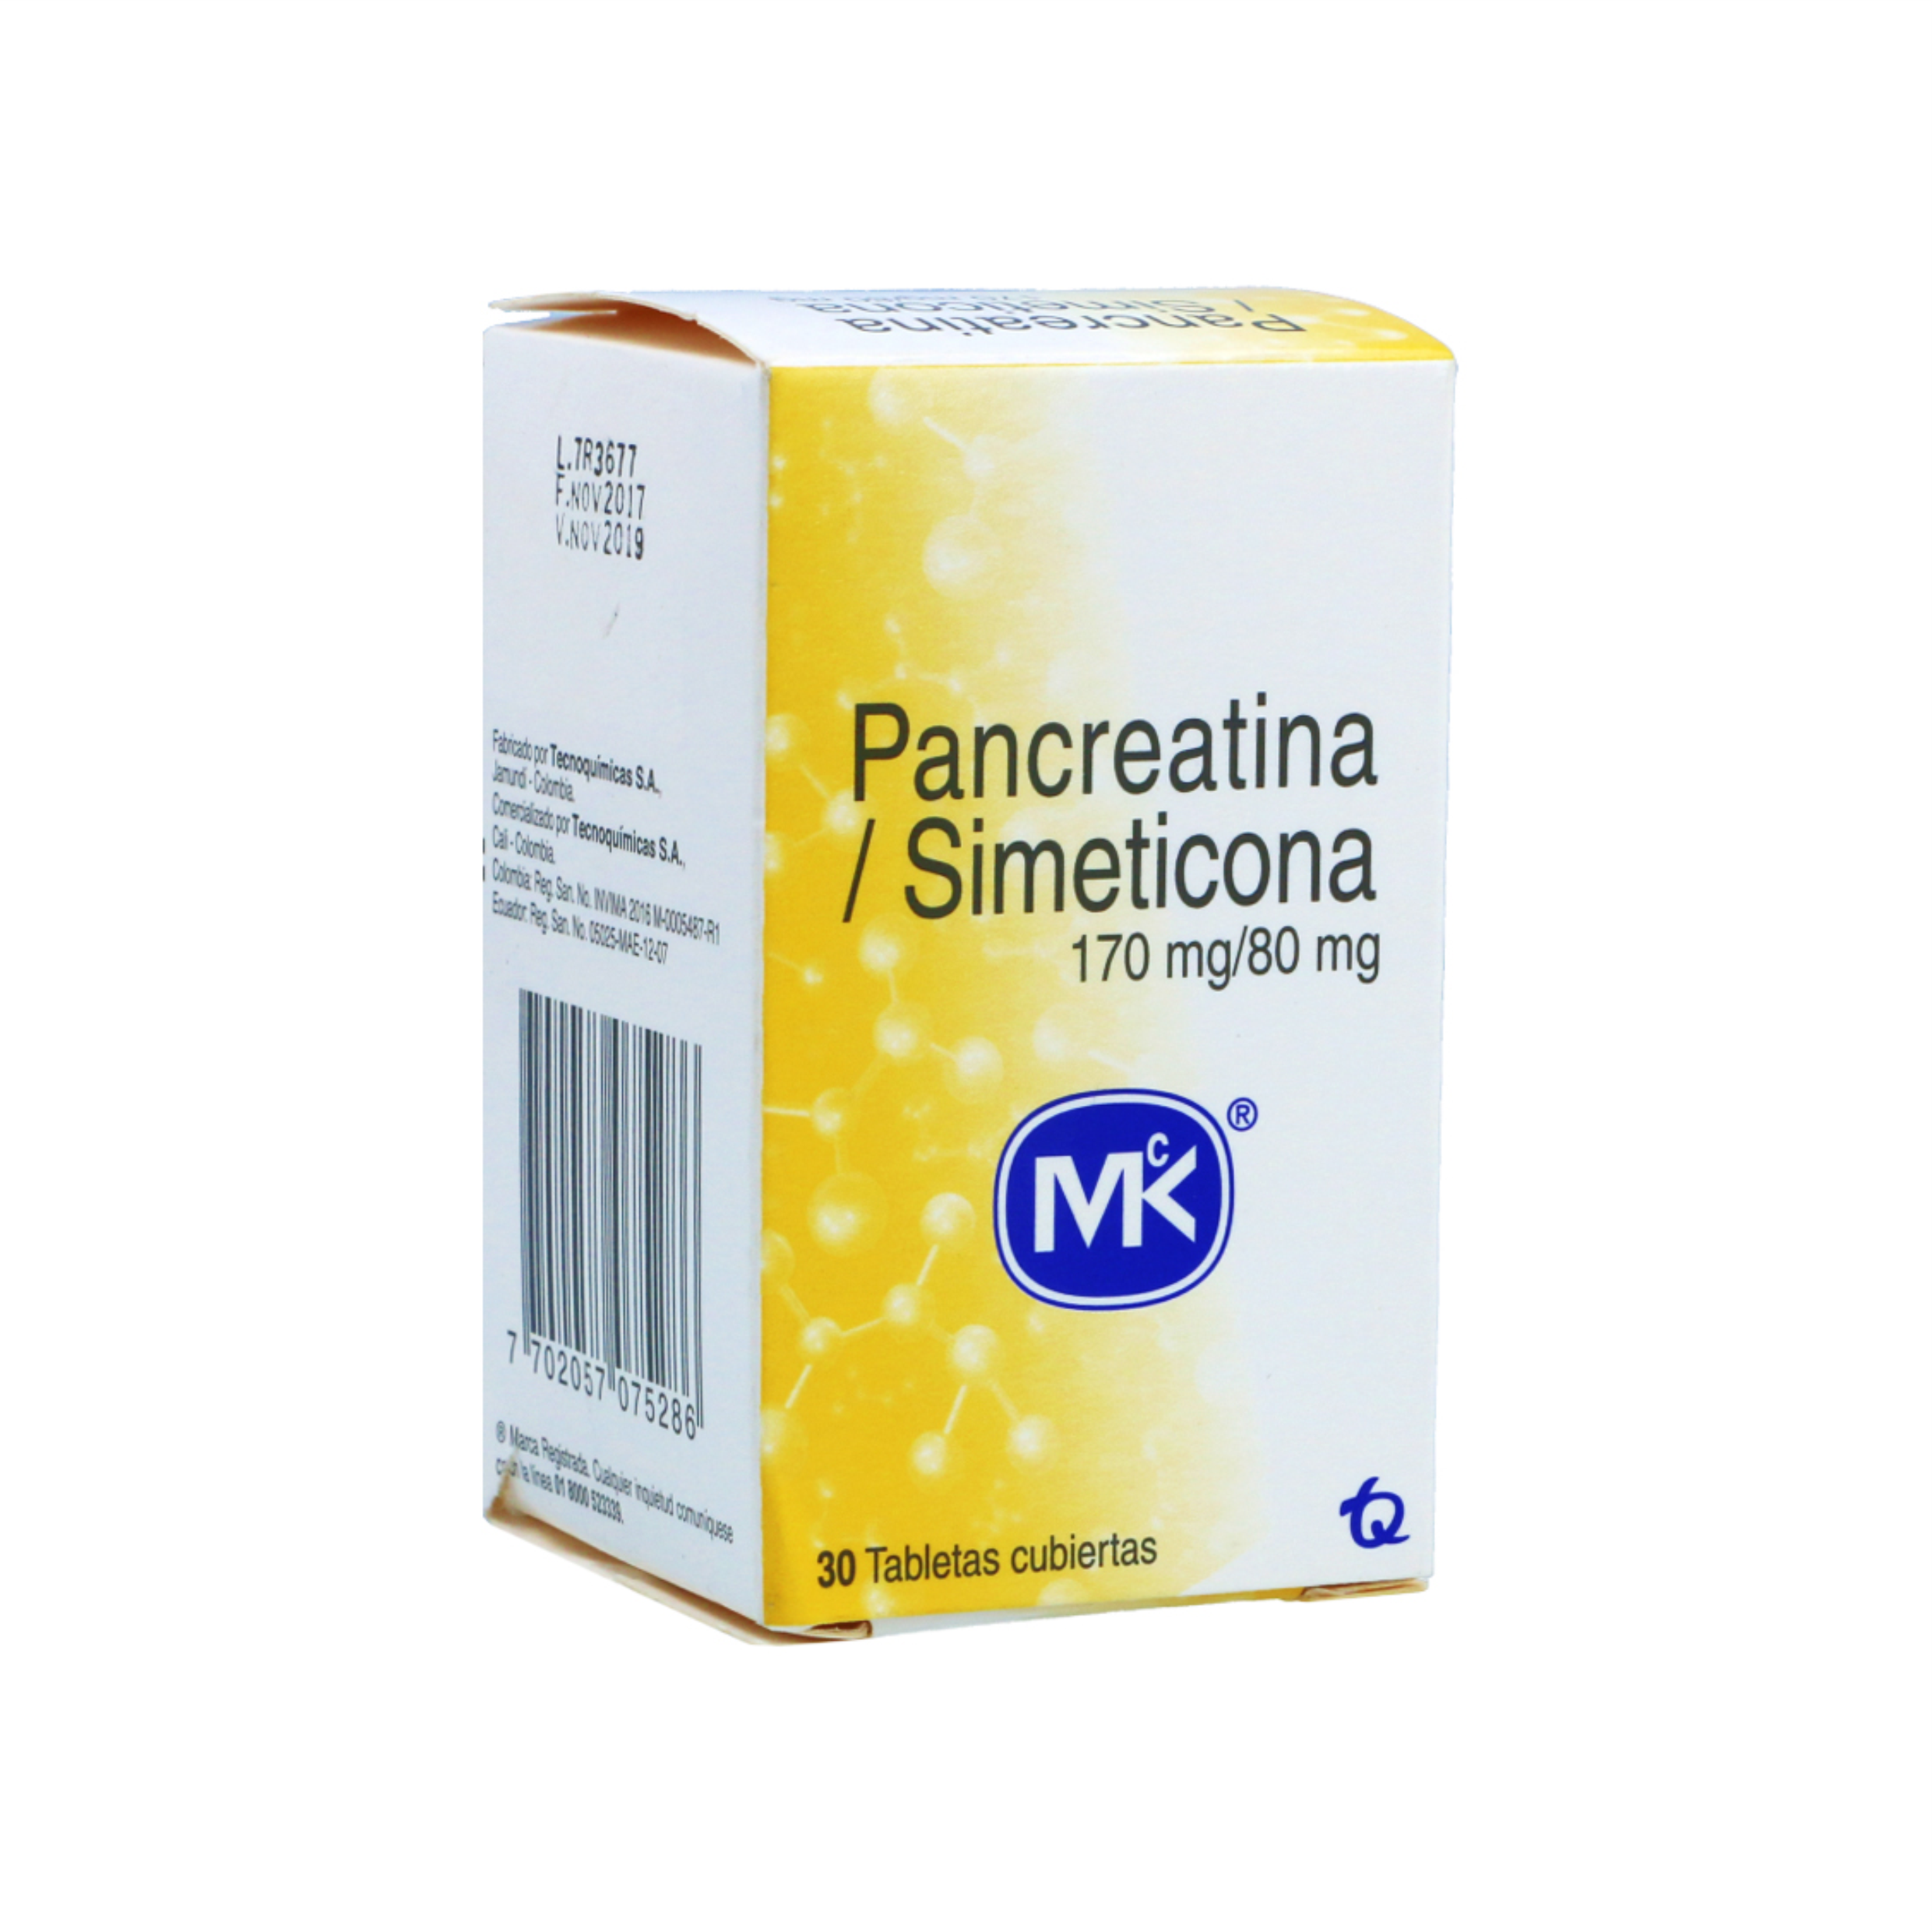 Pancreatina / Simeticona 170 mg/80 mg